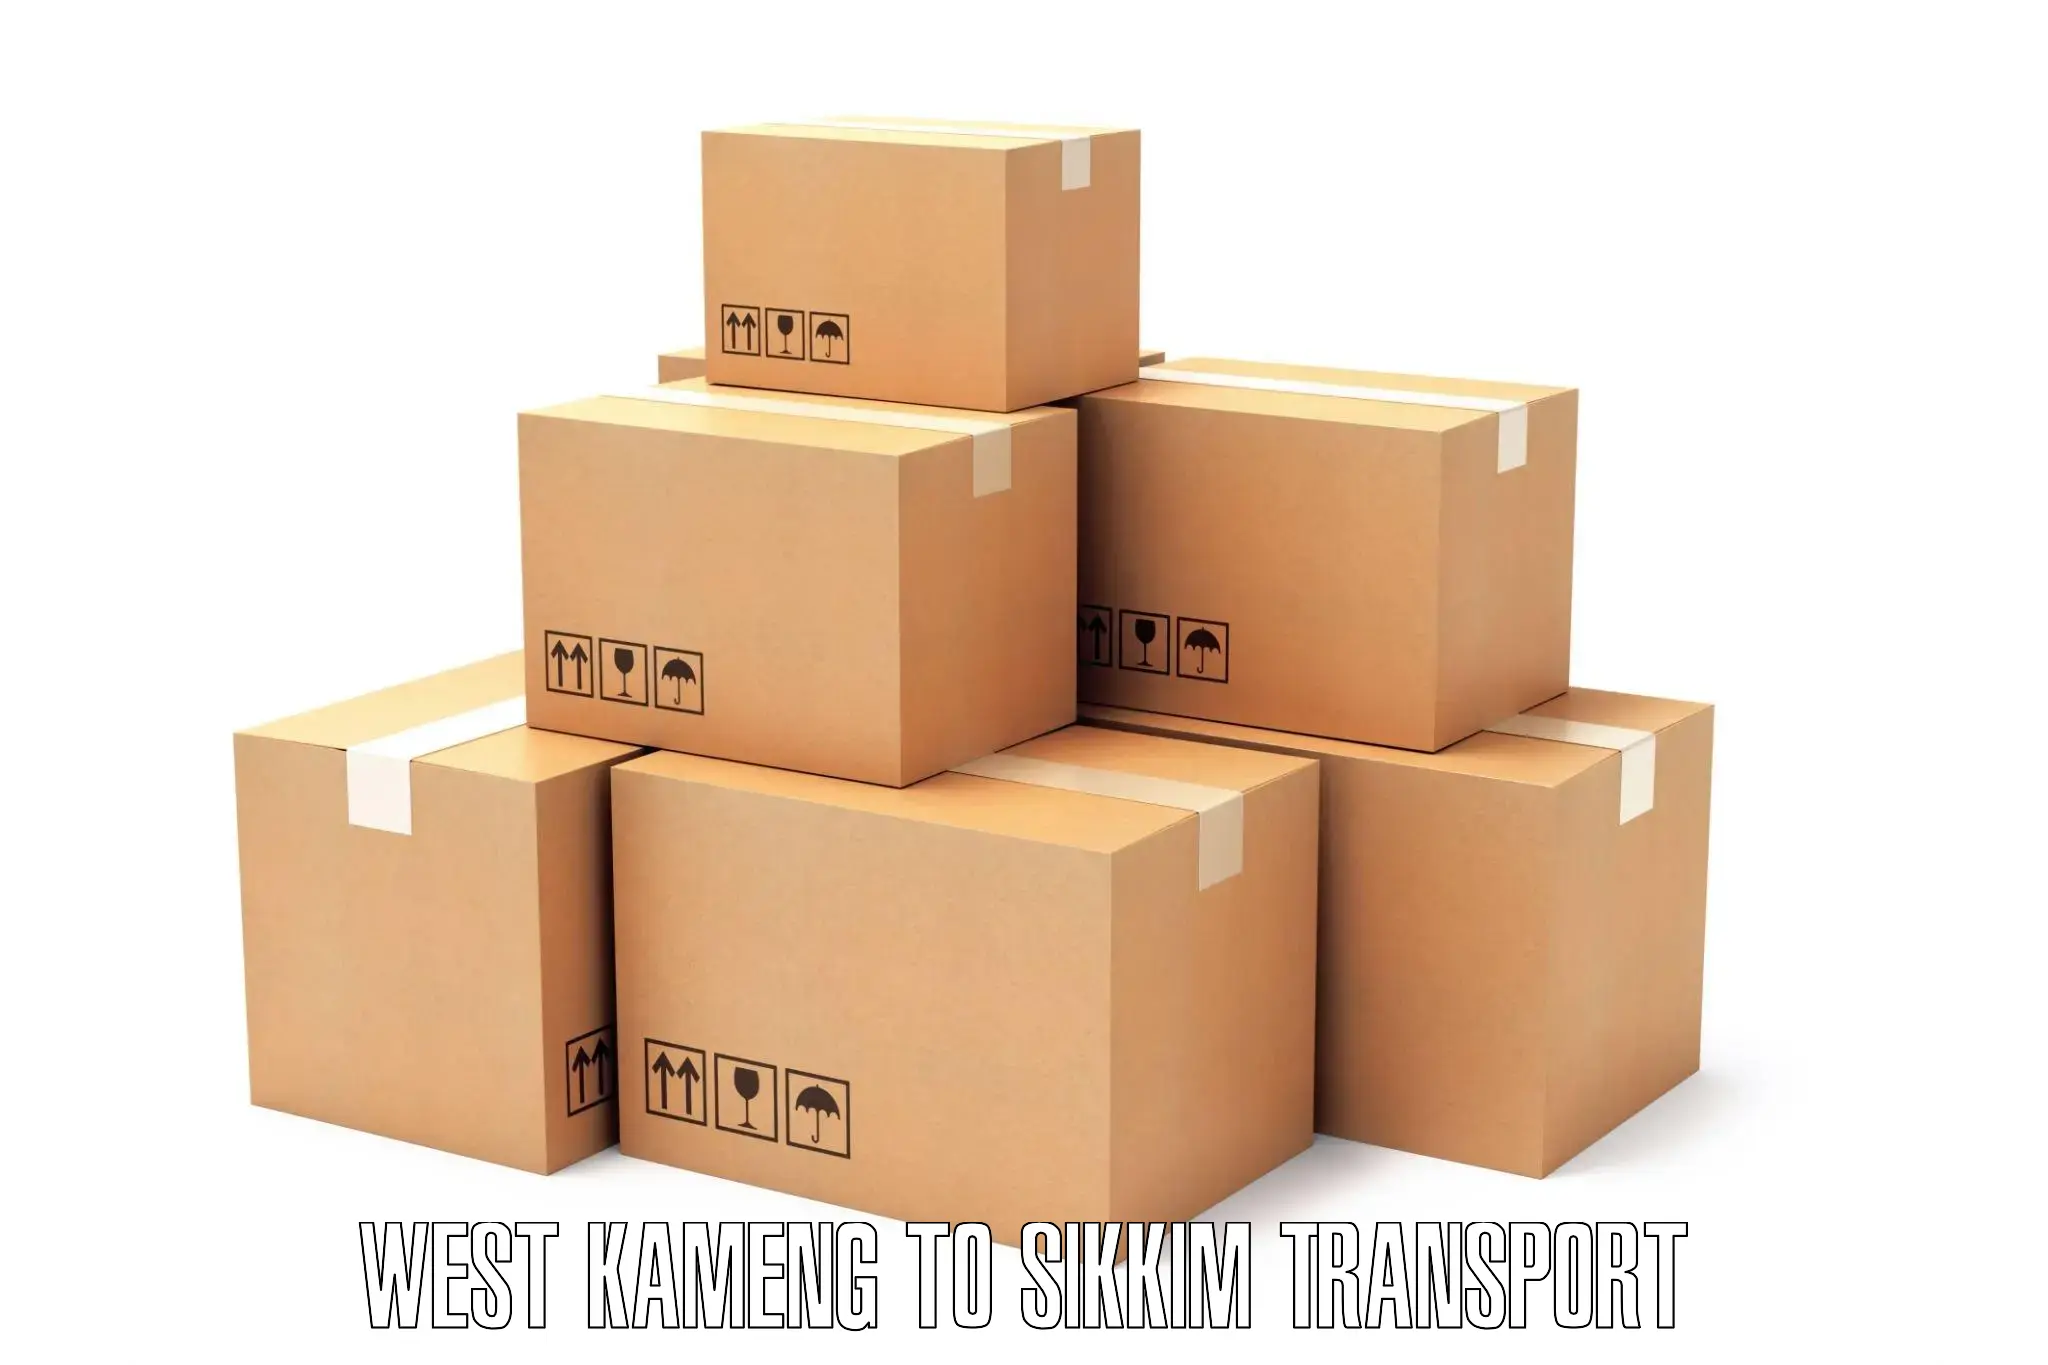 Furniture transport service West Kameng to Jorethang